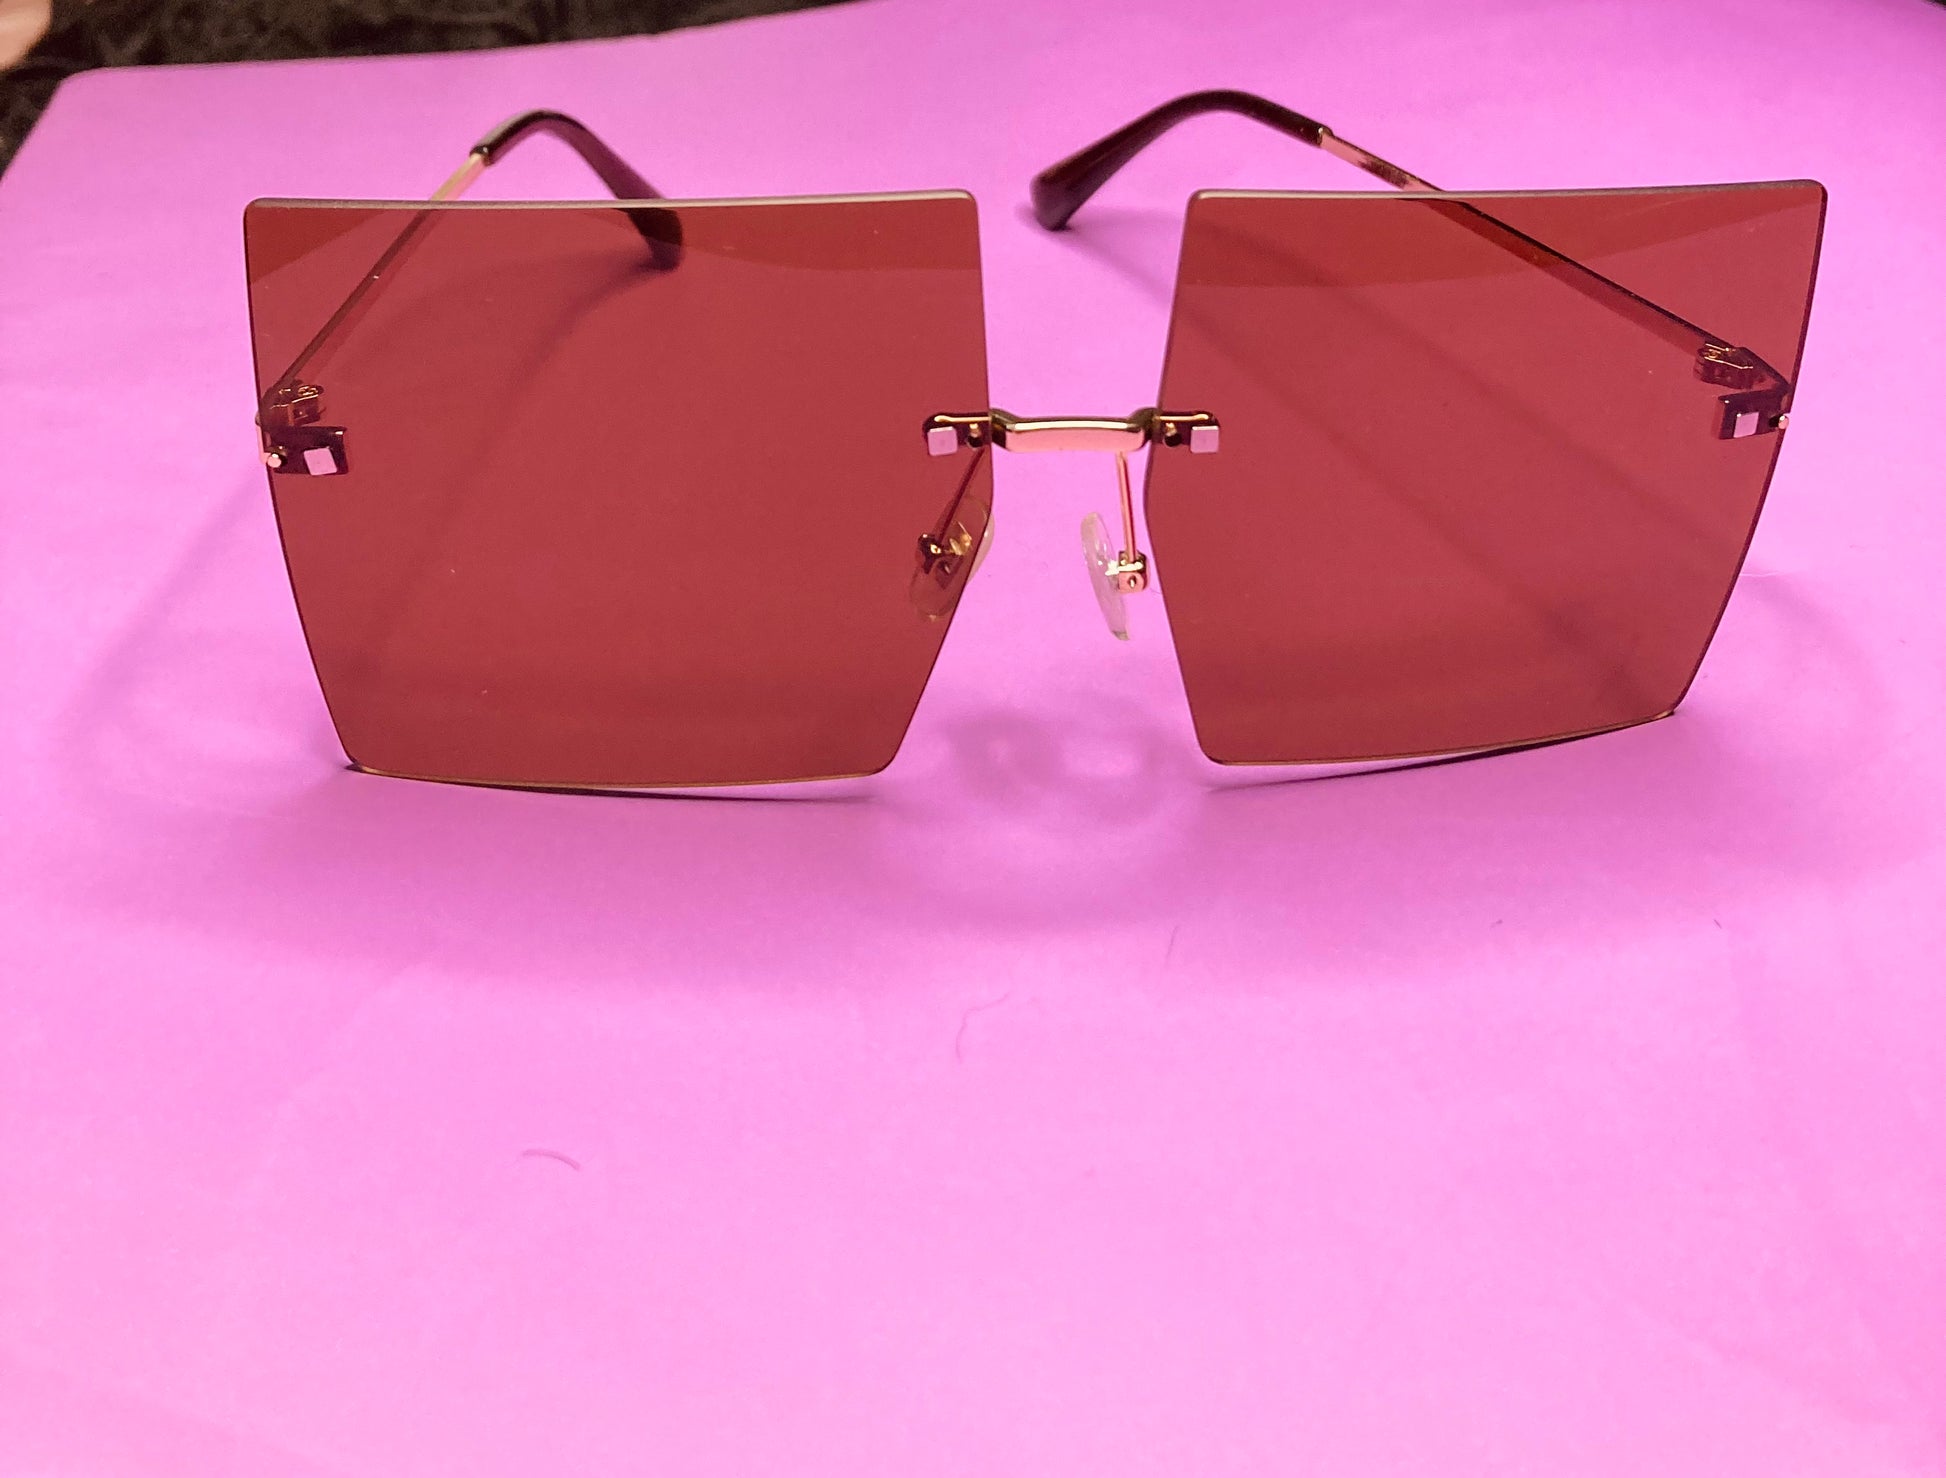 miami sunglasses luxury sunglasses for women luxury shades cute sunglasses for women quality sunglasses light sunglasses luxury shades